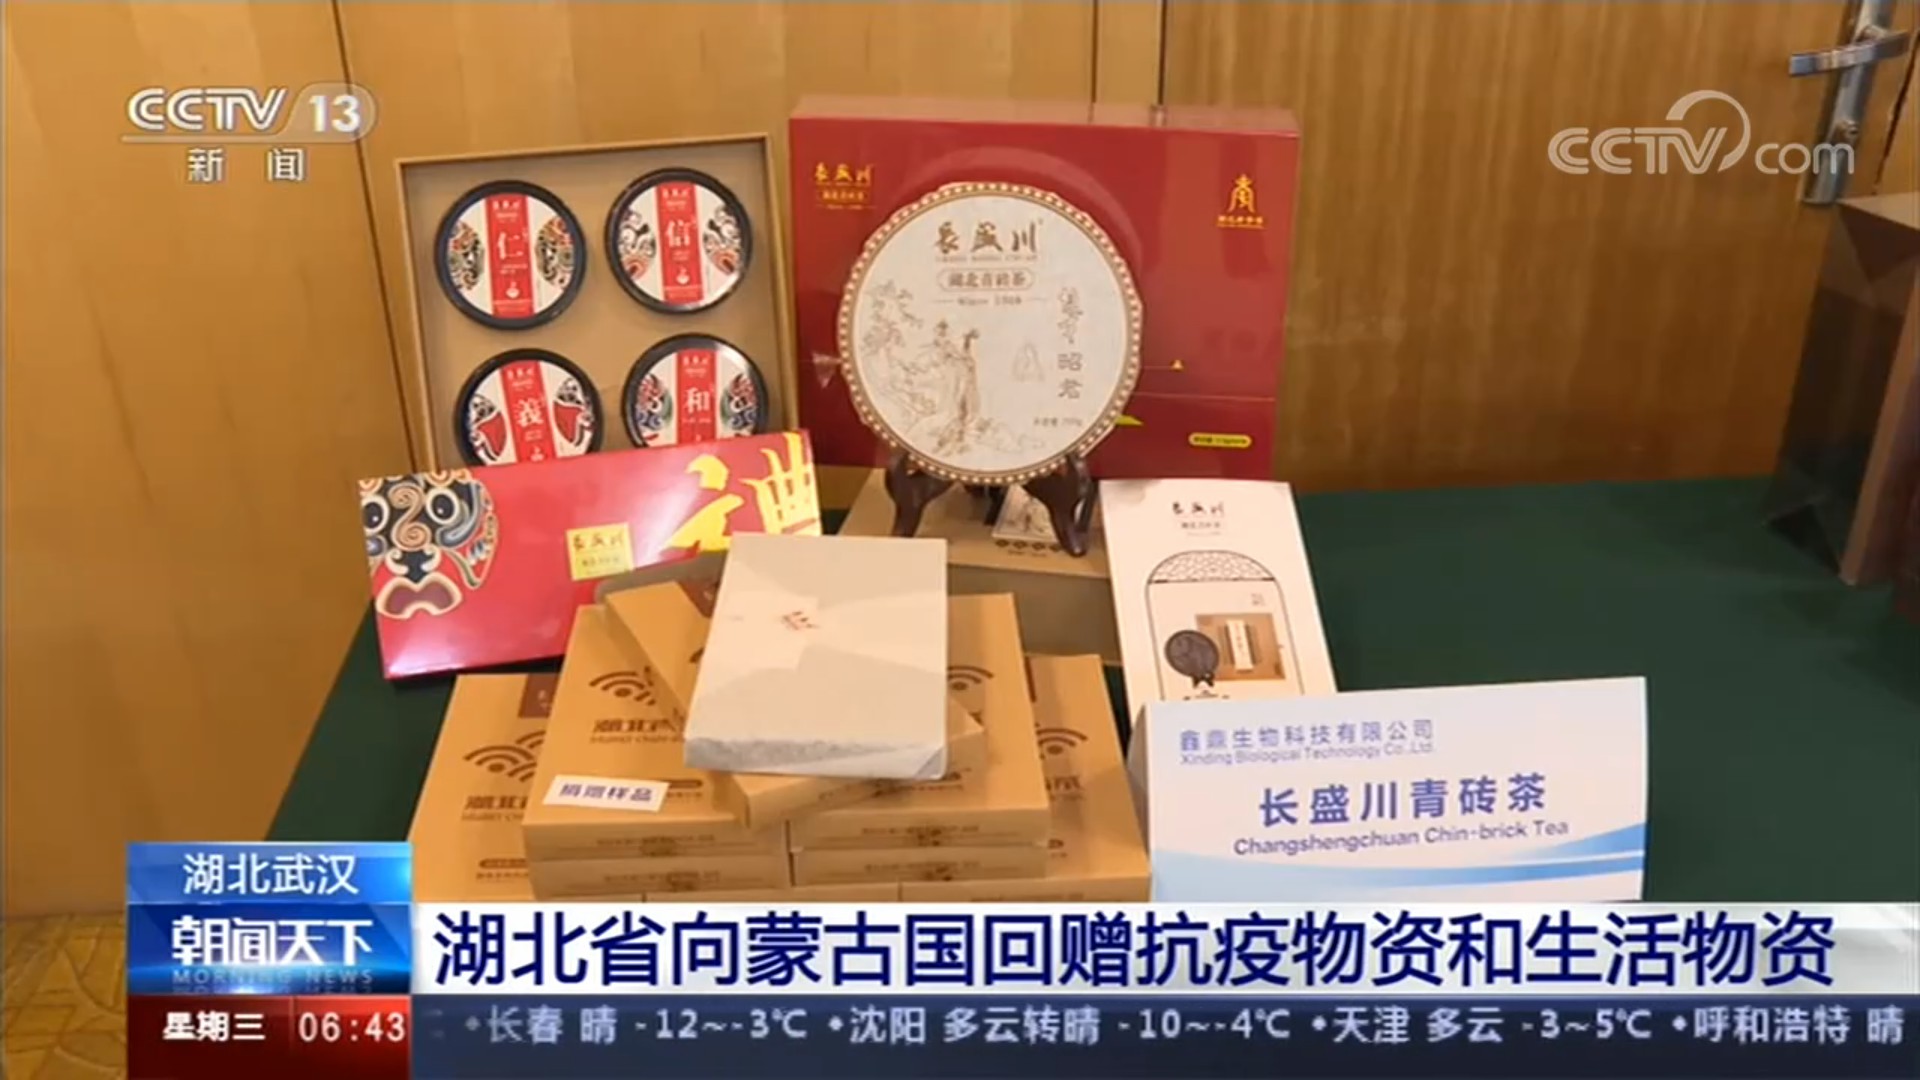 CCTV-13新闻频道 [朝闻天下]湖北武汉 湖北省向蒙古国回赠抗疫物资和生活物资